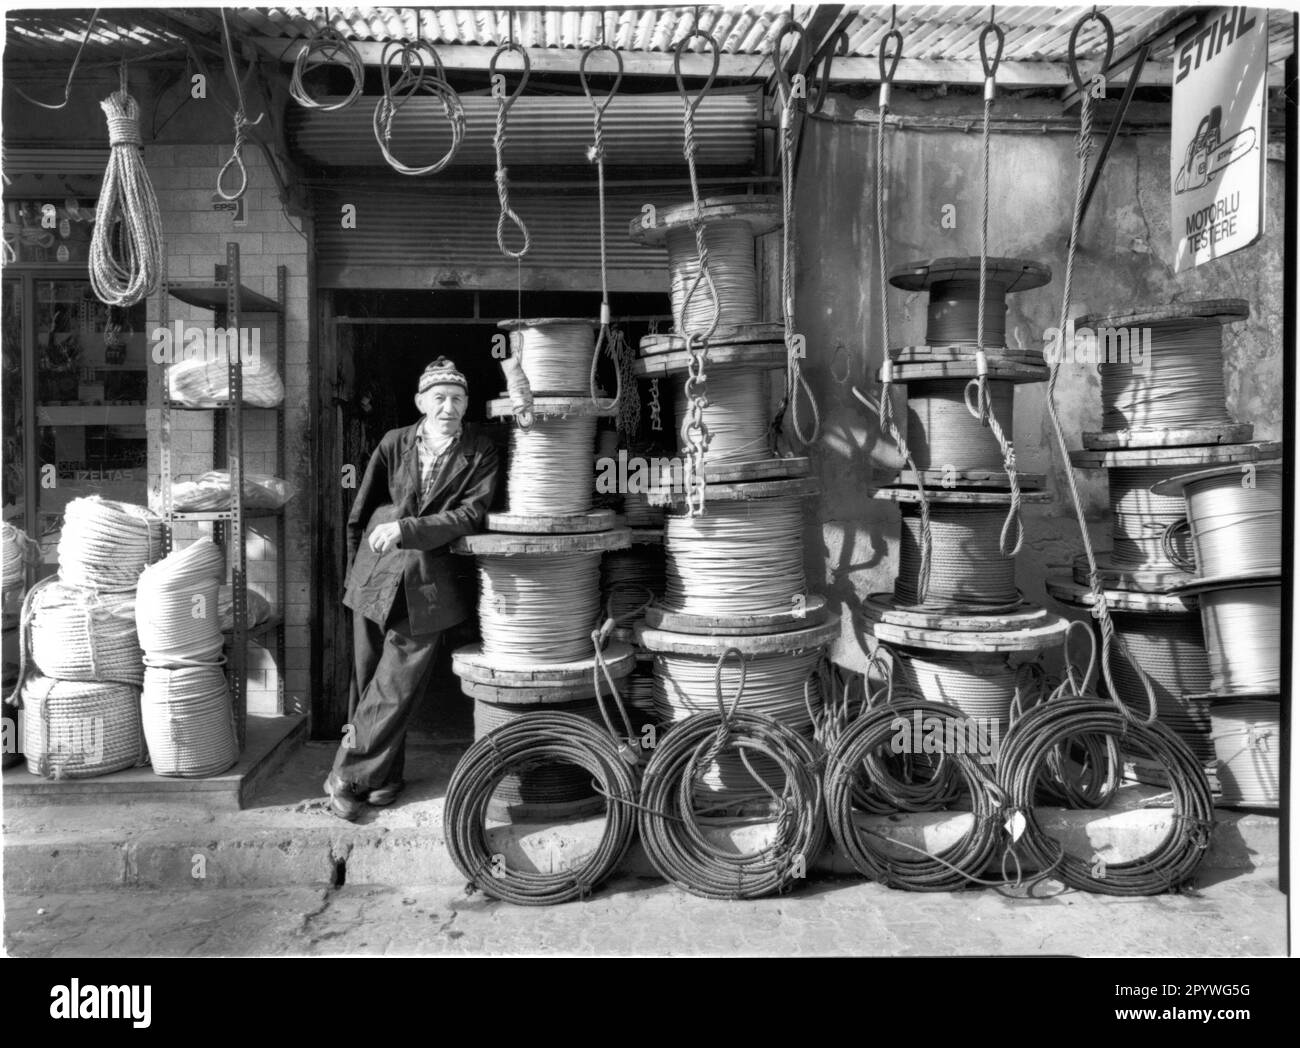 Istanbul (Turchia), distretto di Karakoy (Galata). Macchina per funi con pulegge davanti al suo negozio. Street scene, bianco e nero. Foto, 1994. Foto Stock